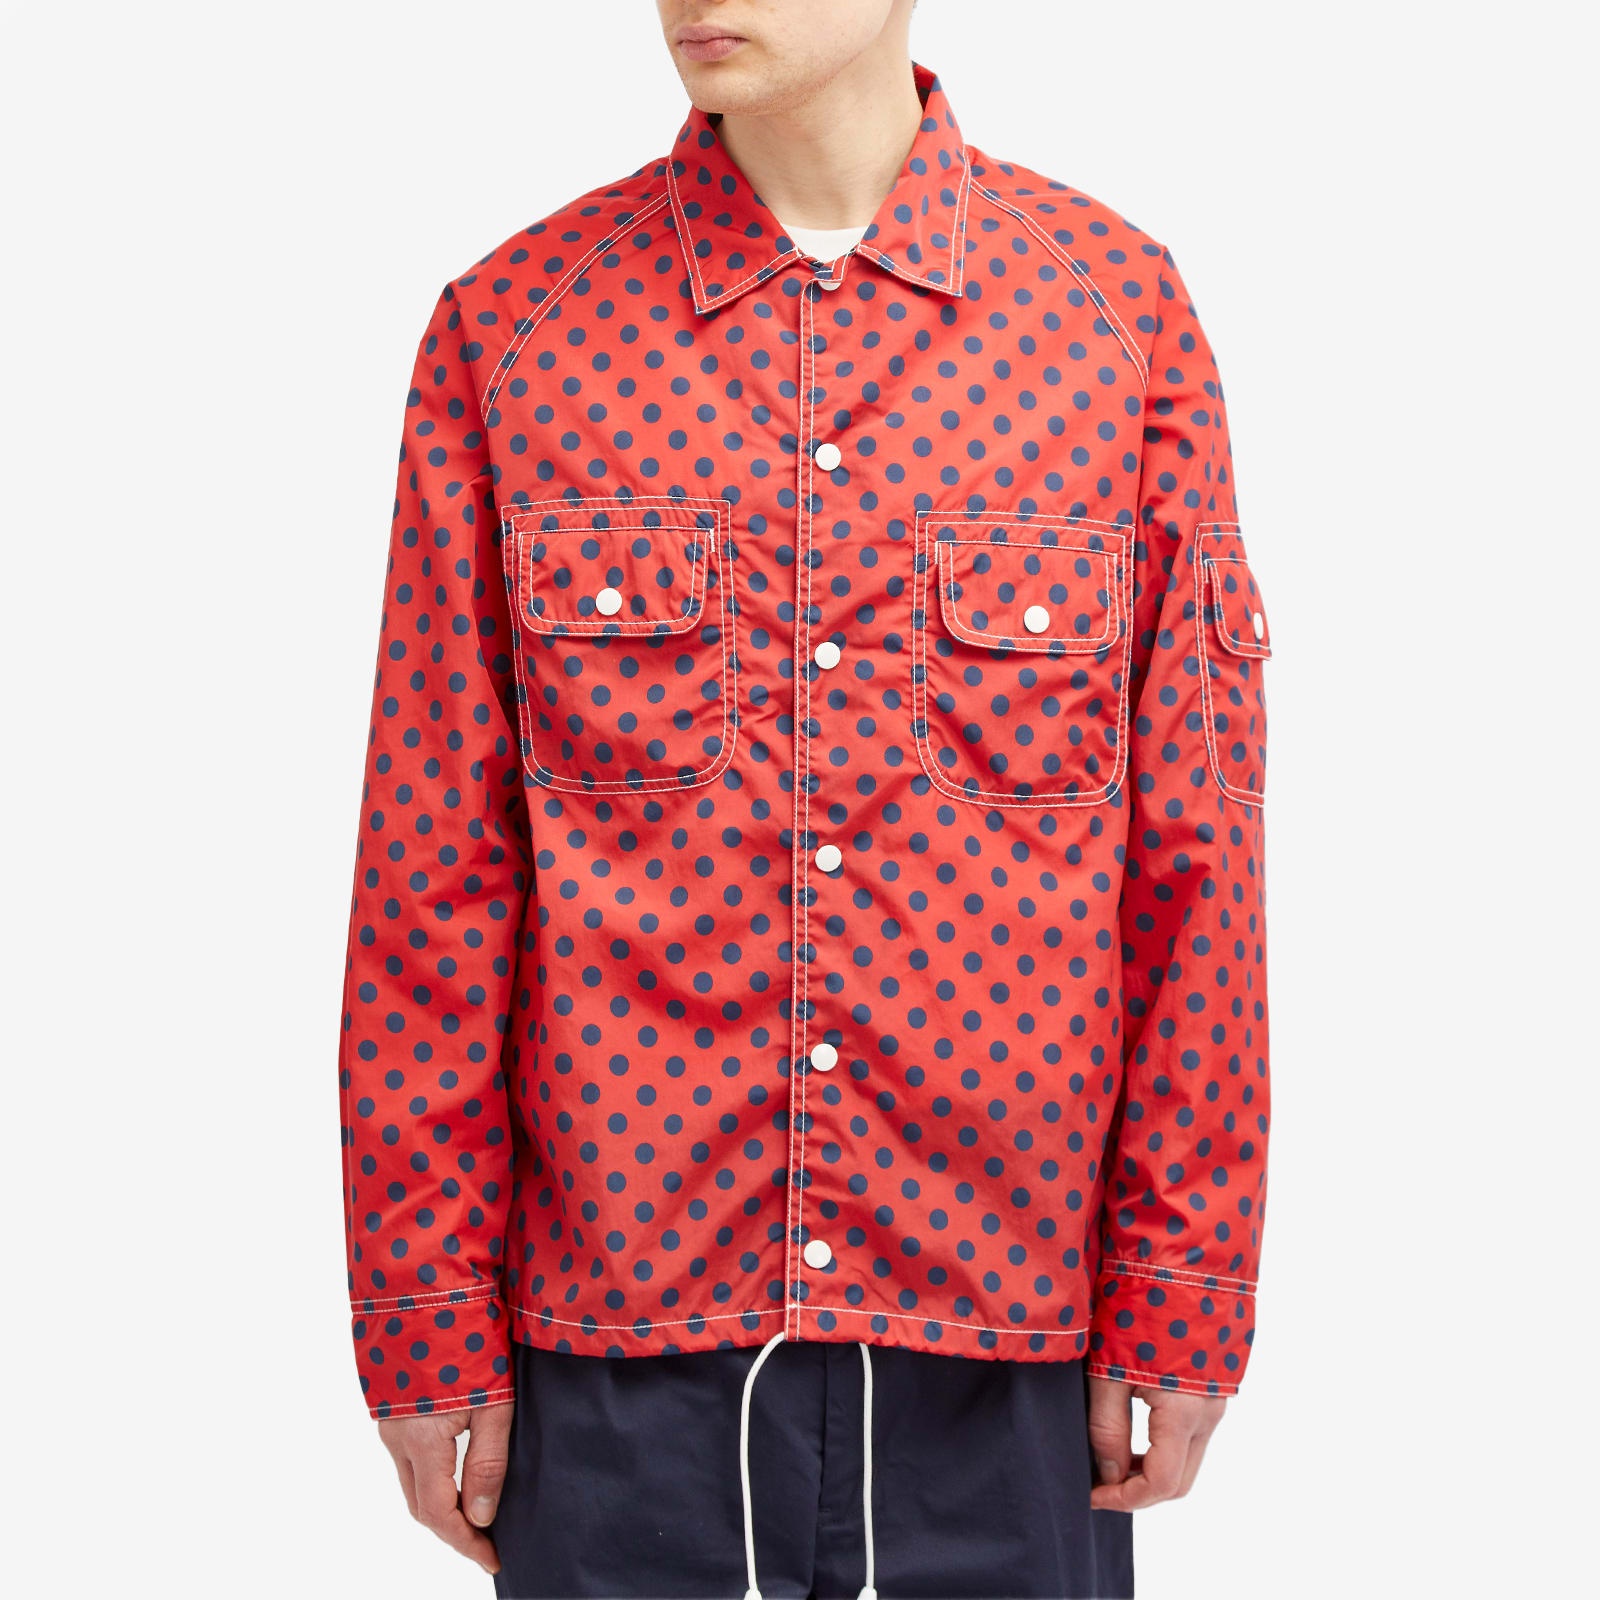 Beams Plus Polka Dot Sports Shirt Jacket - 2